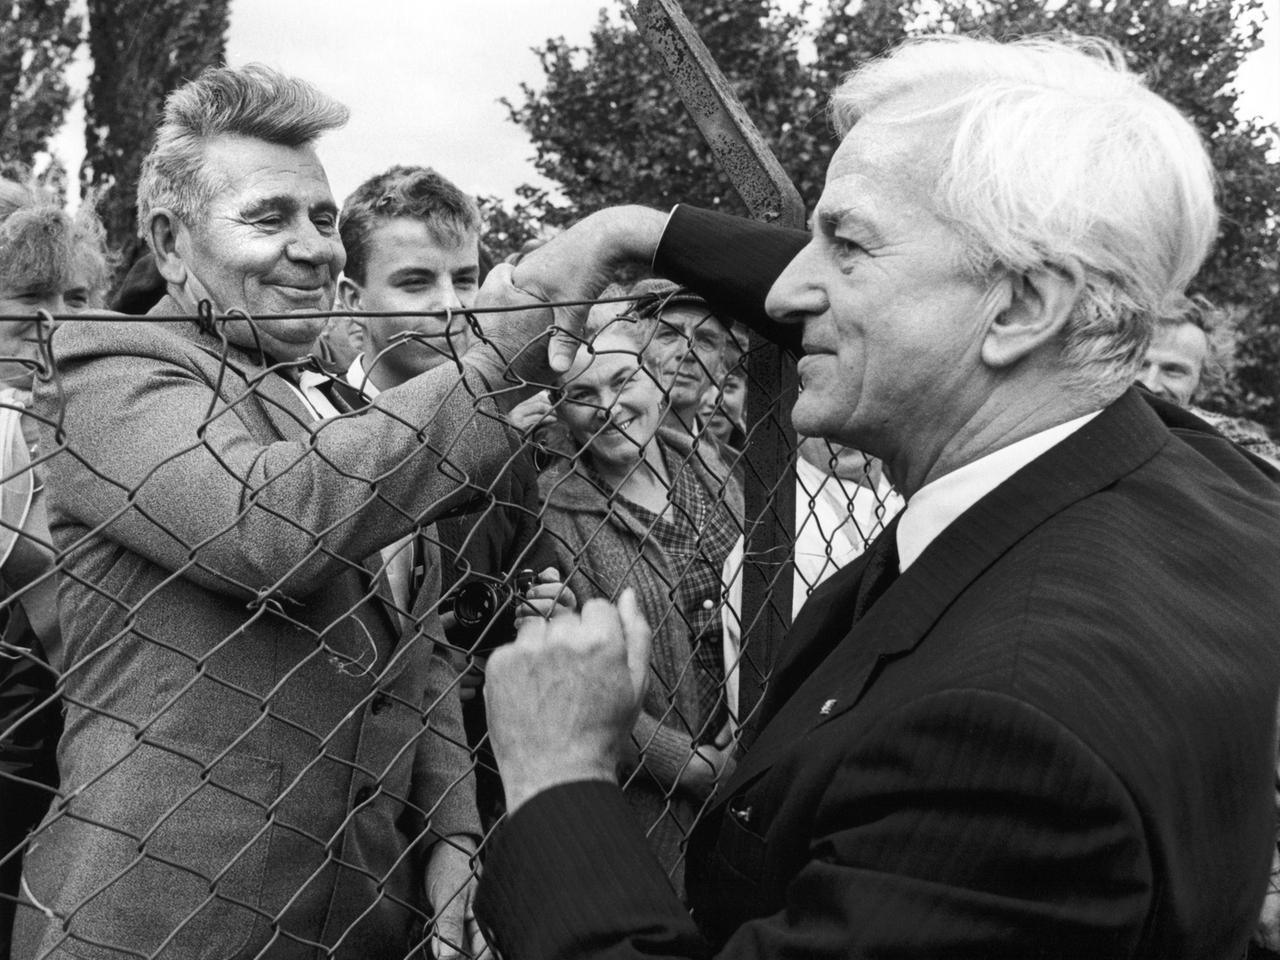 Begrüßung über den Zaun hinweg: Stundenlang haben die Aussiedler am 06.10.1987 auf die Ankunft von Richard von Weizsäcker (r) gewartet. Der Bundespräsident besucht die Institution anlässlich des 30-jährigen Bestehens der Friedland-Hilfe.